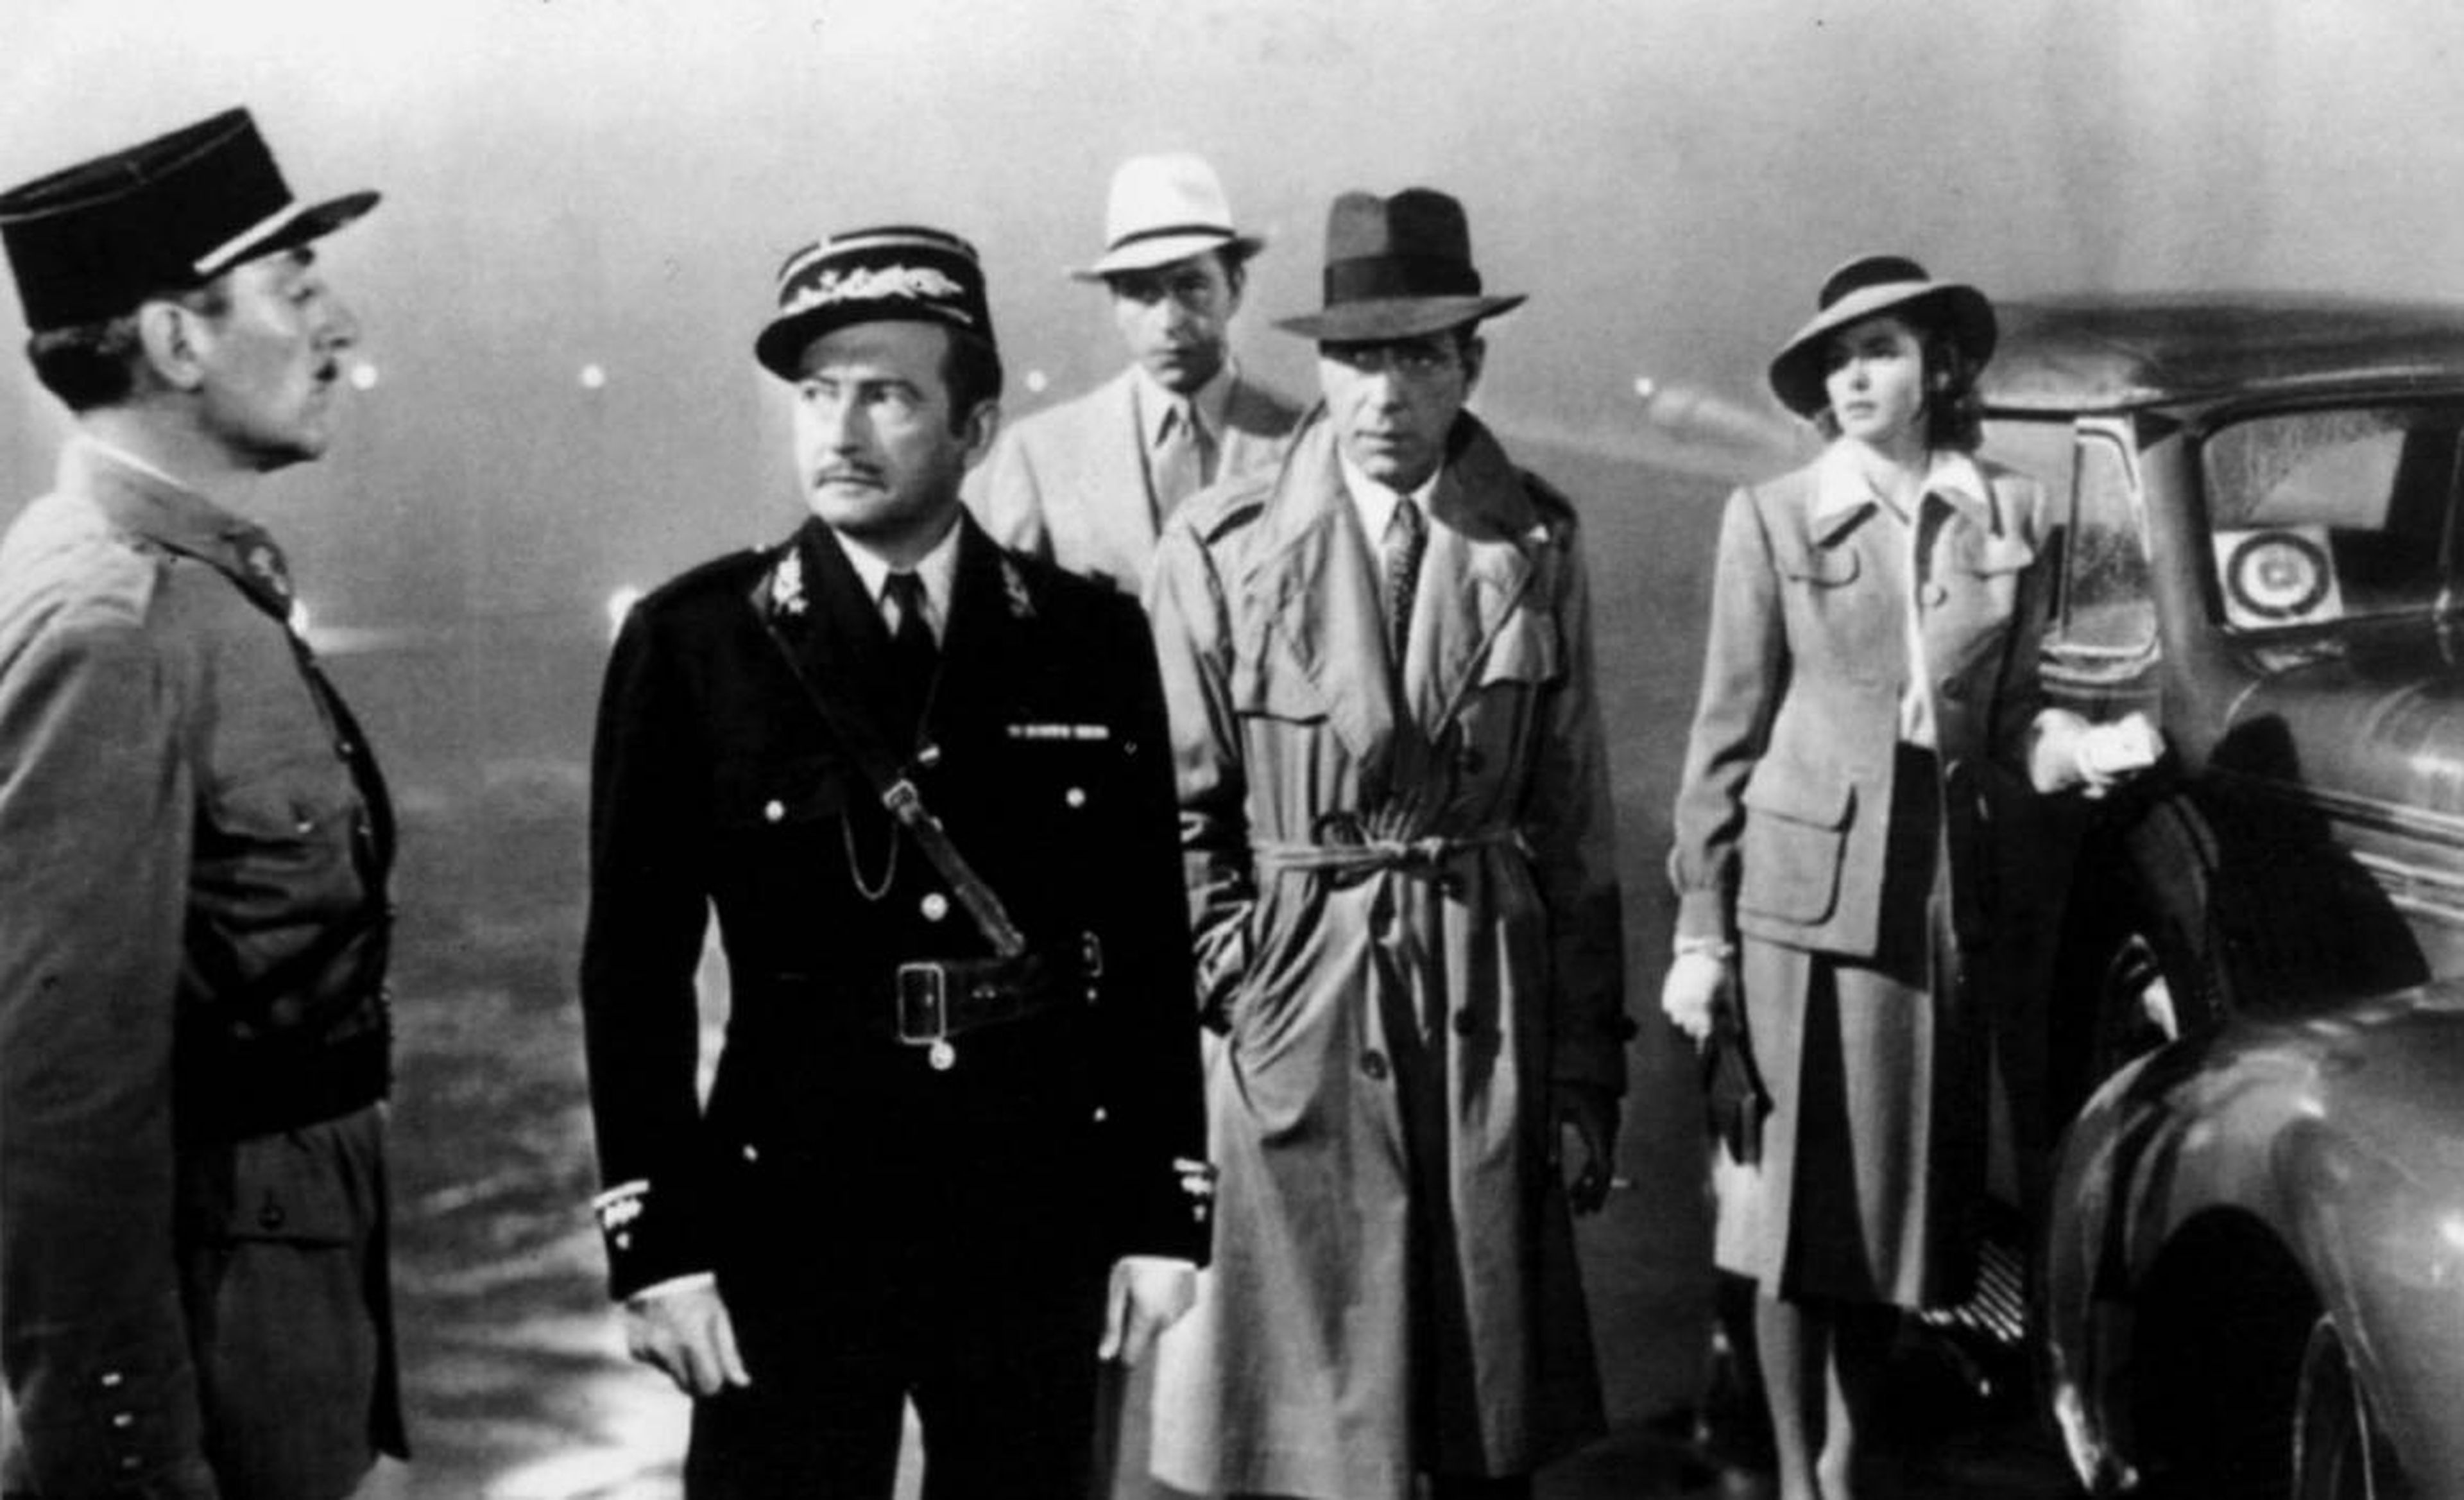 4. "Casablanca" (1943)